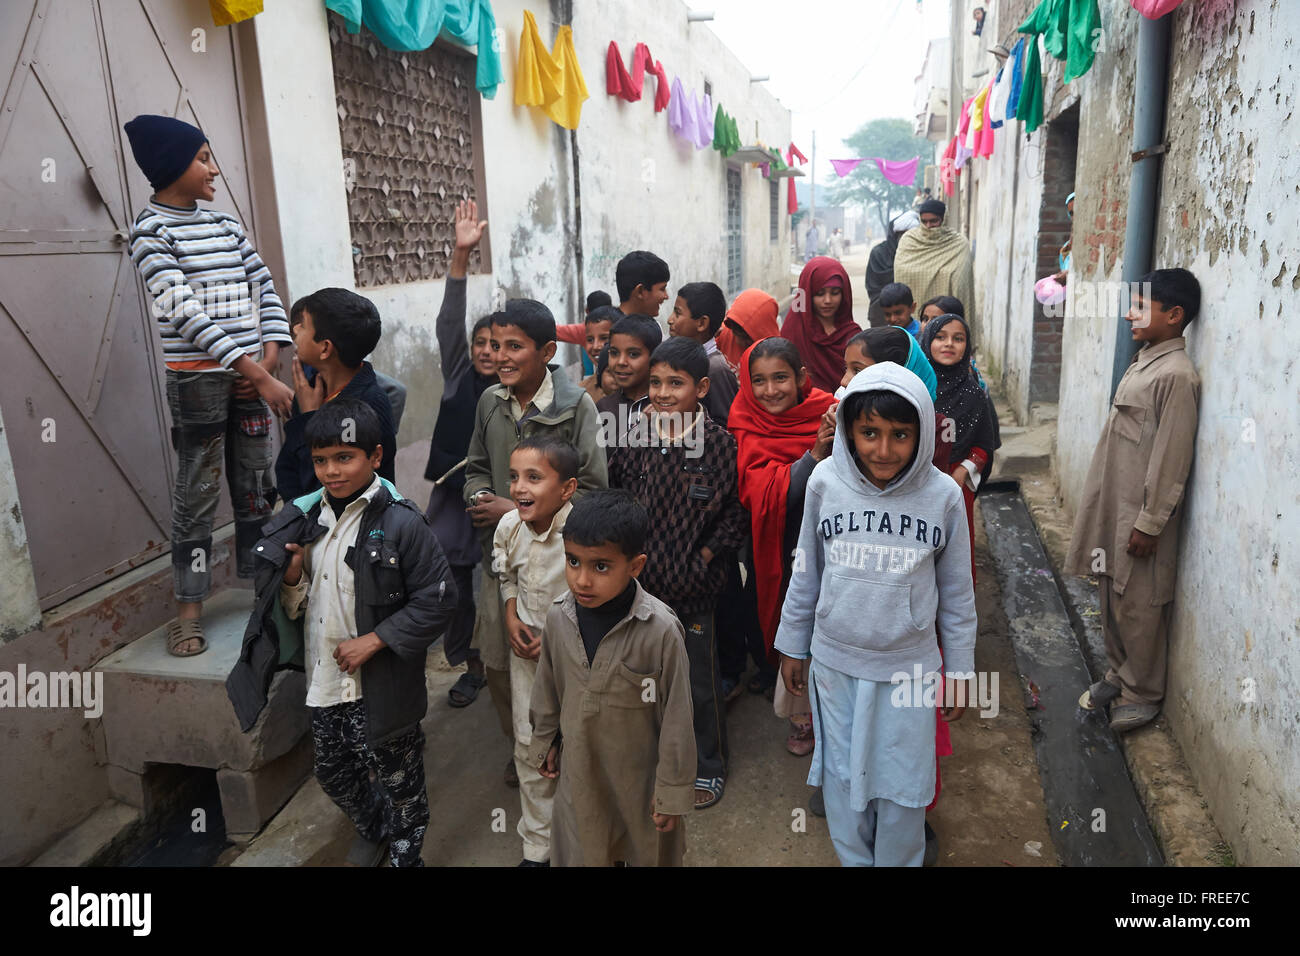 Los niños de la calle, Mahey, Pakistán Foto de stock